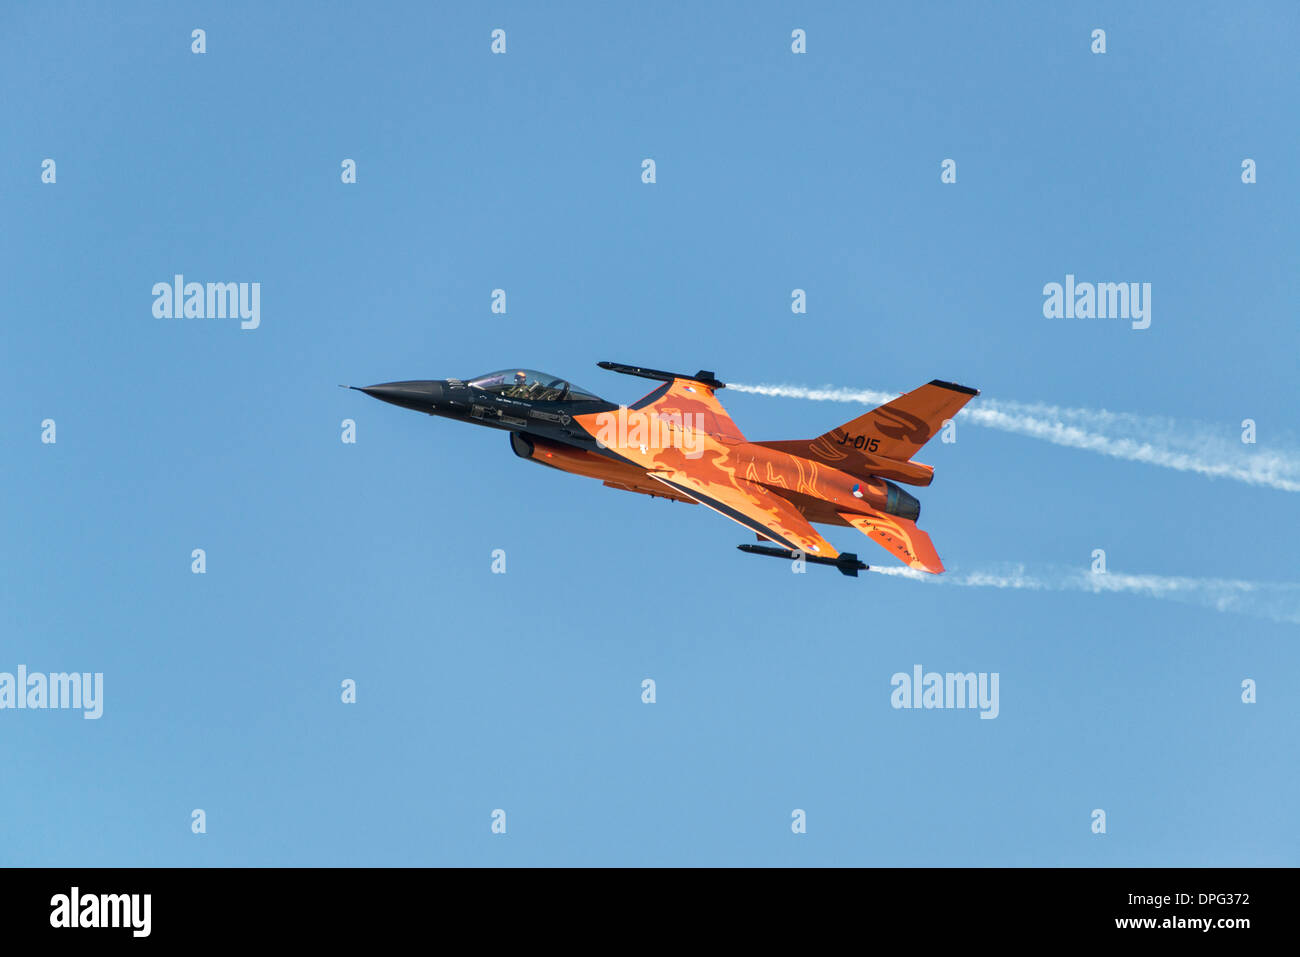 El capitán Stefan 'Stitch' Hutten toma la naranja F-16 Holandés acrobático a través de una impresionante exhibición en el RIAT 2013 Foto de stock